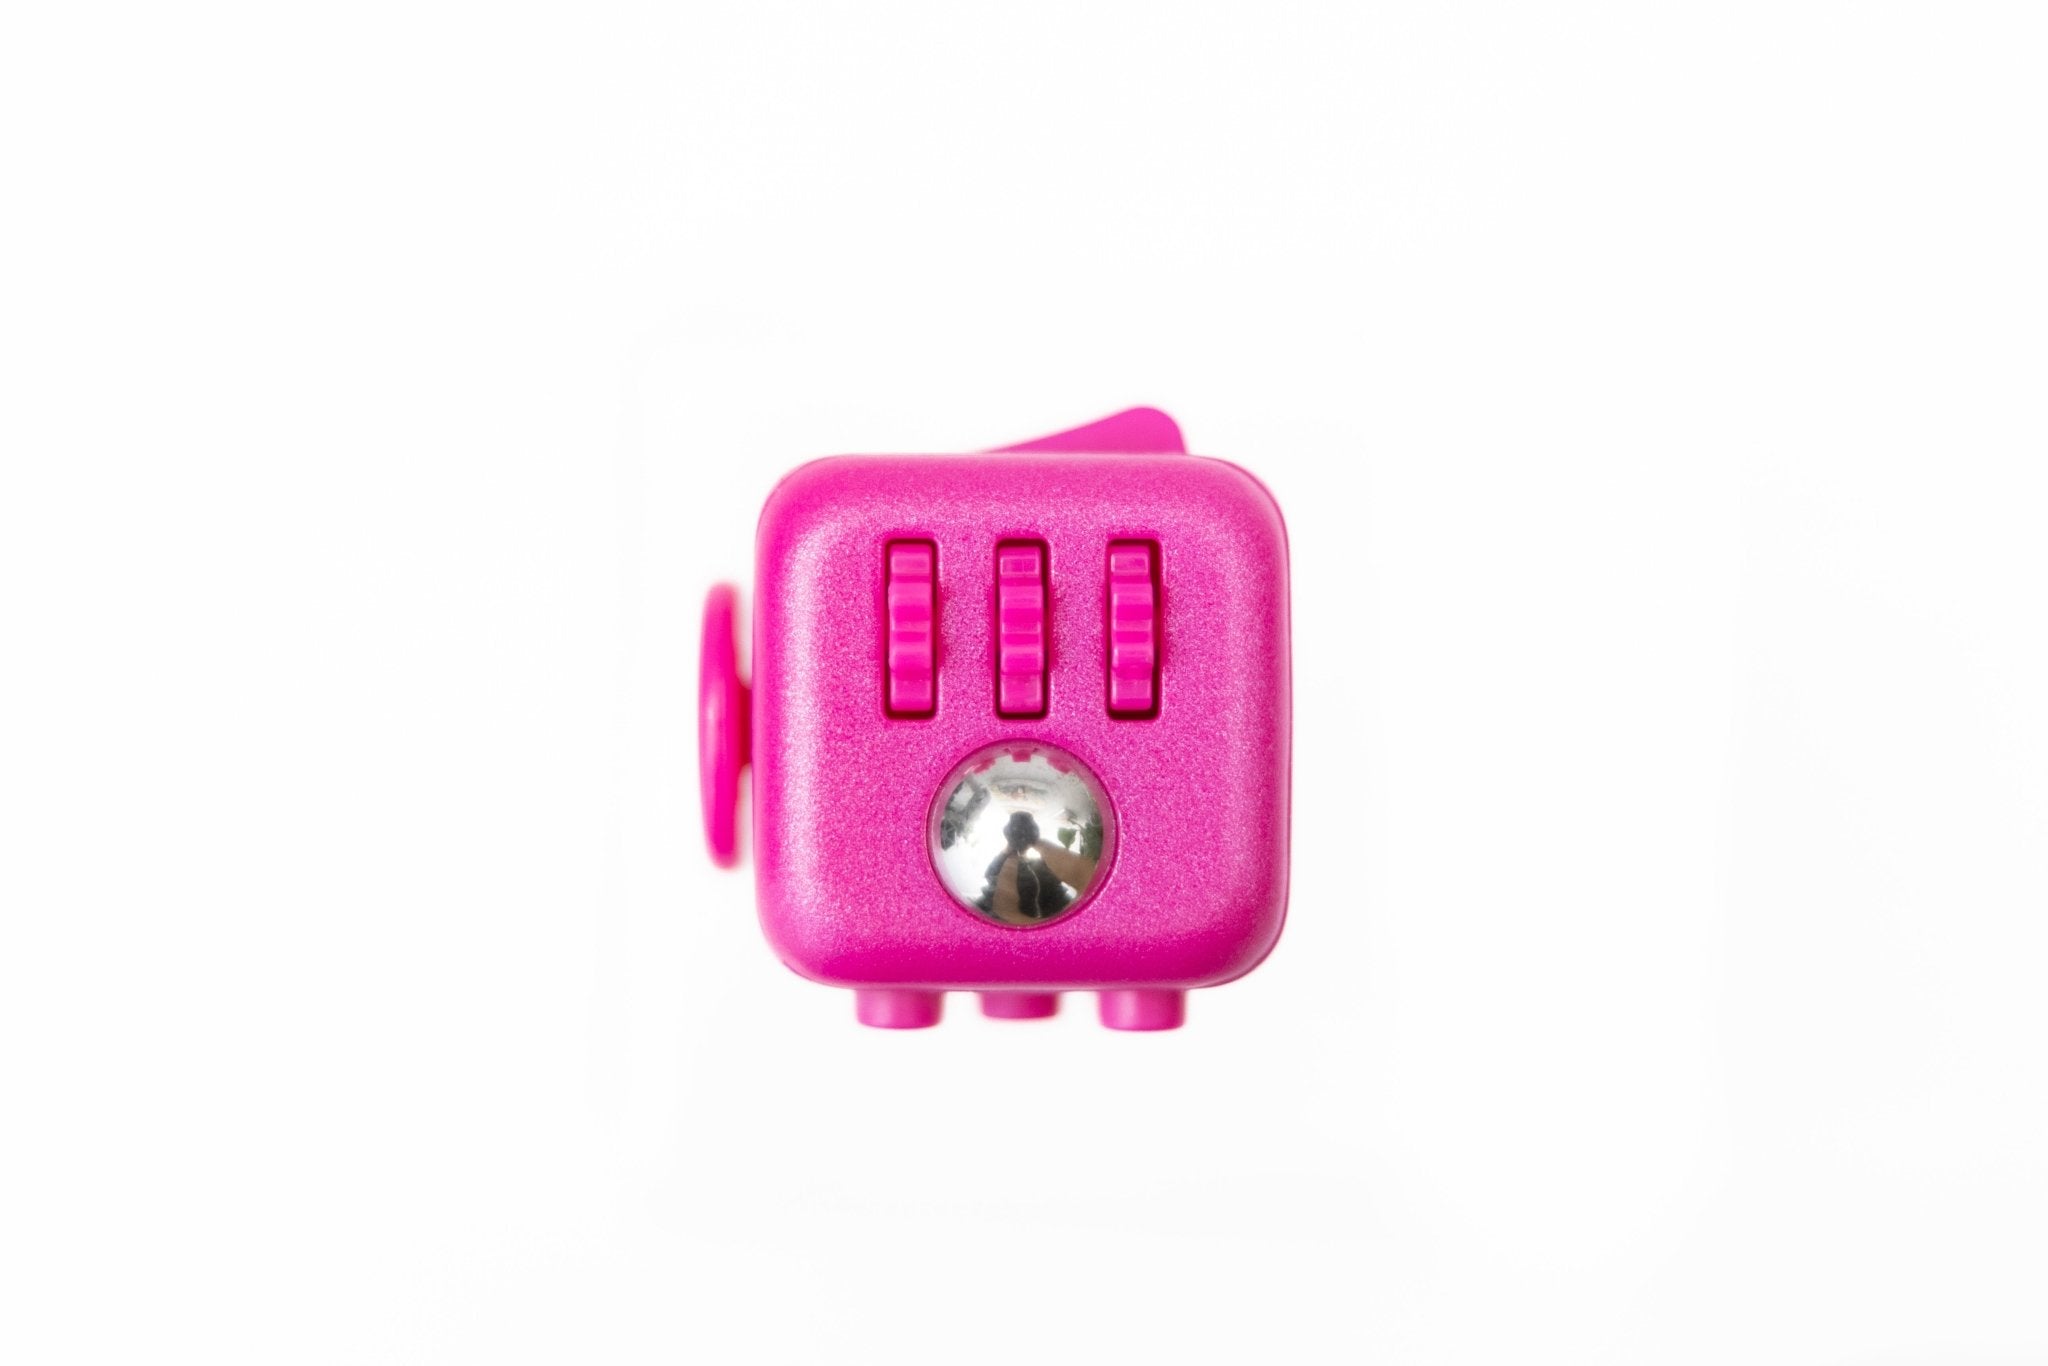 ZURU Fidget Cube by Antsy Labs - Neon Green Glow in The Dark Fidget Cube